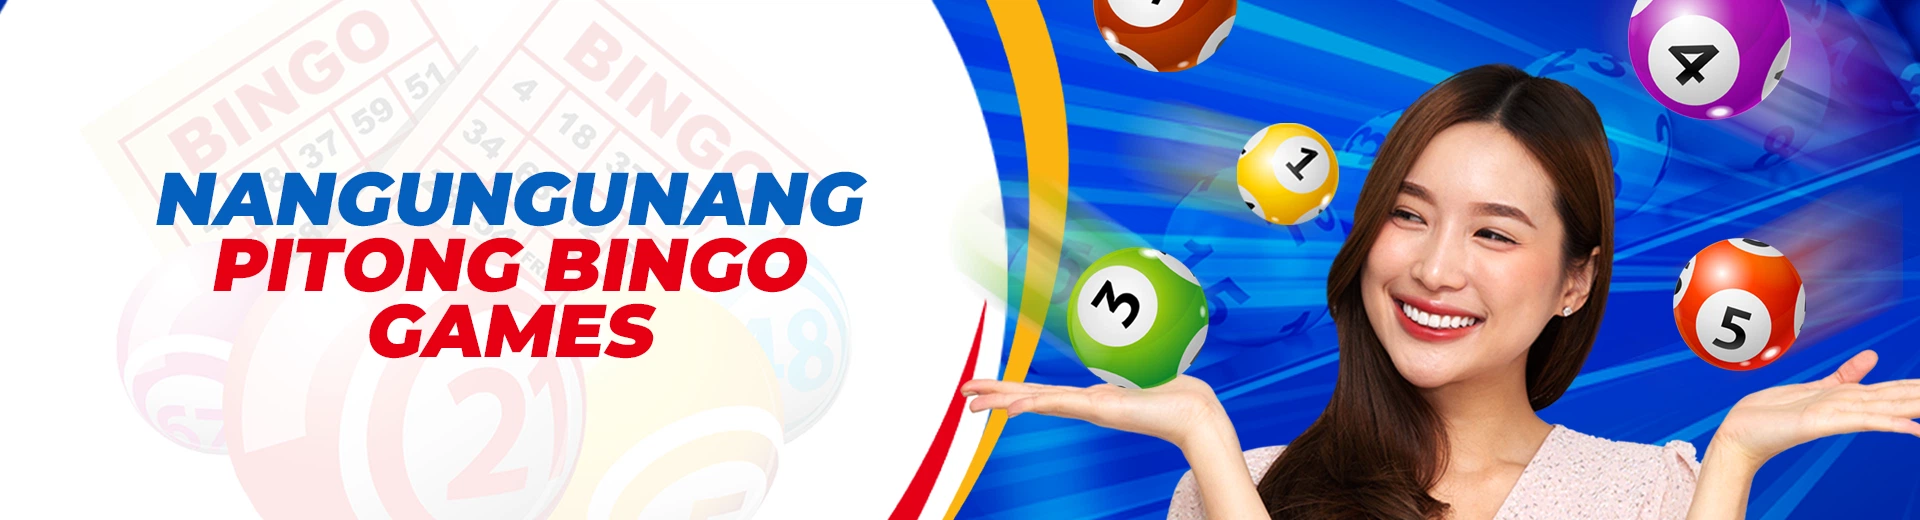 OKBET online bingo games